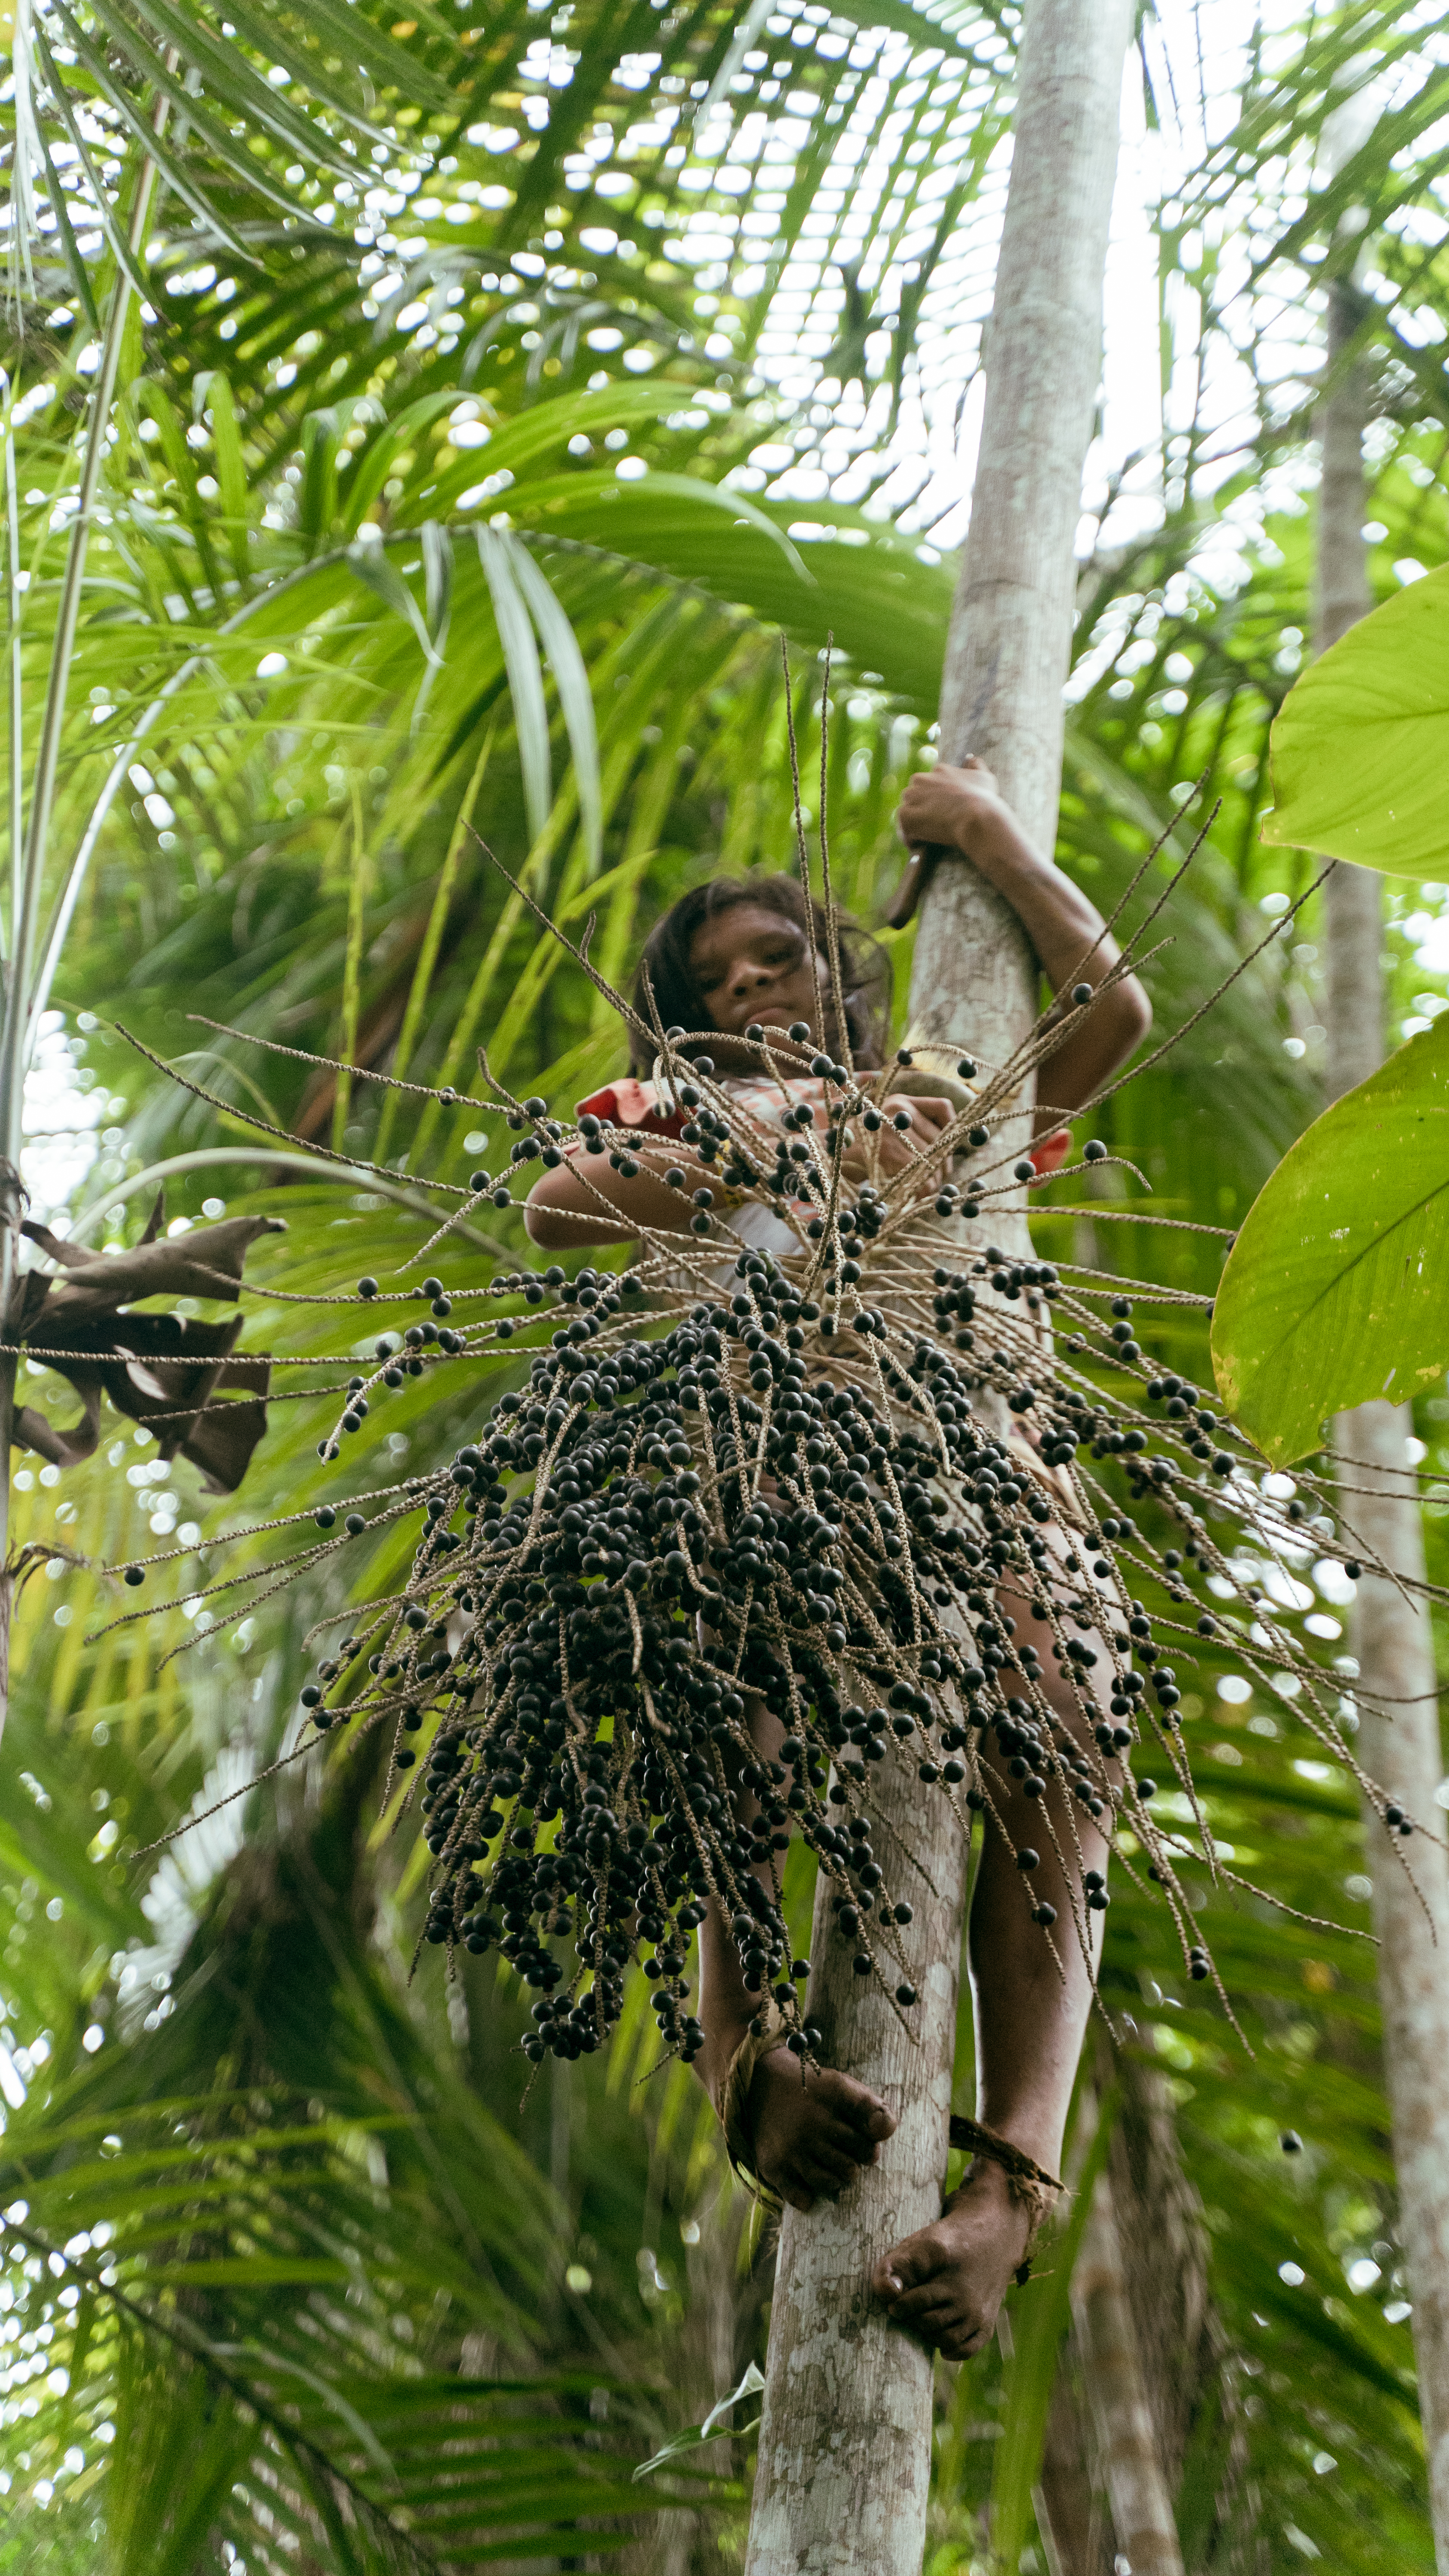 A coleta de alimentos na floresta faz parte da cultura Arara e agora fazem parte do cardápio das merendas|Priscila Tapajowara/ISA